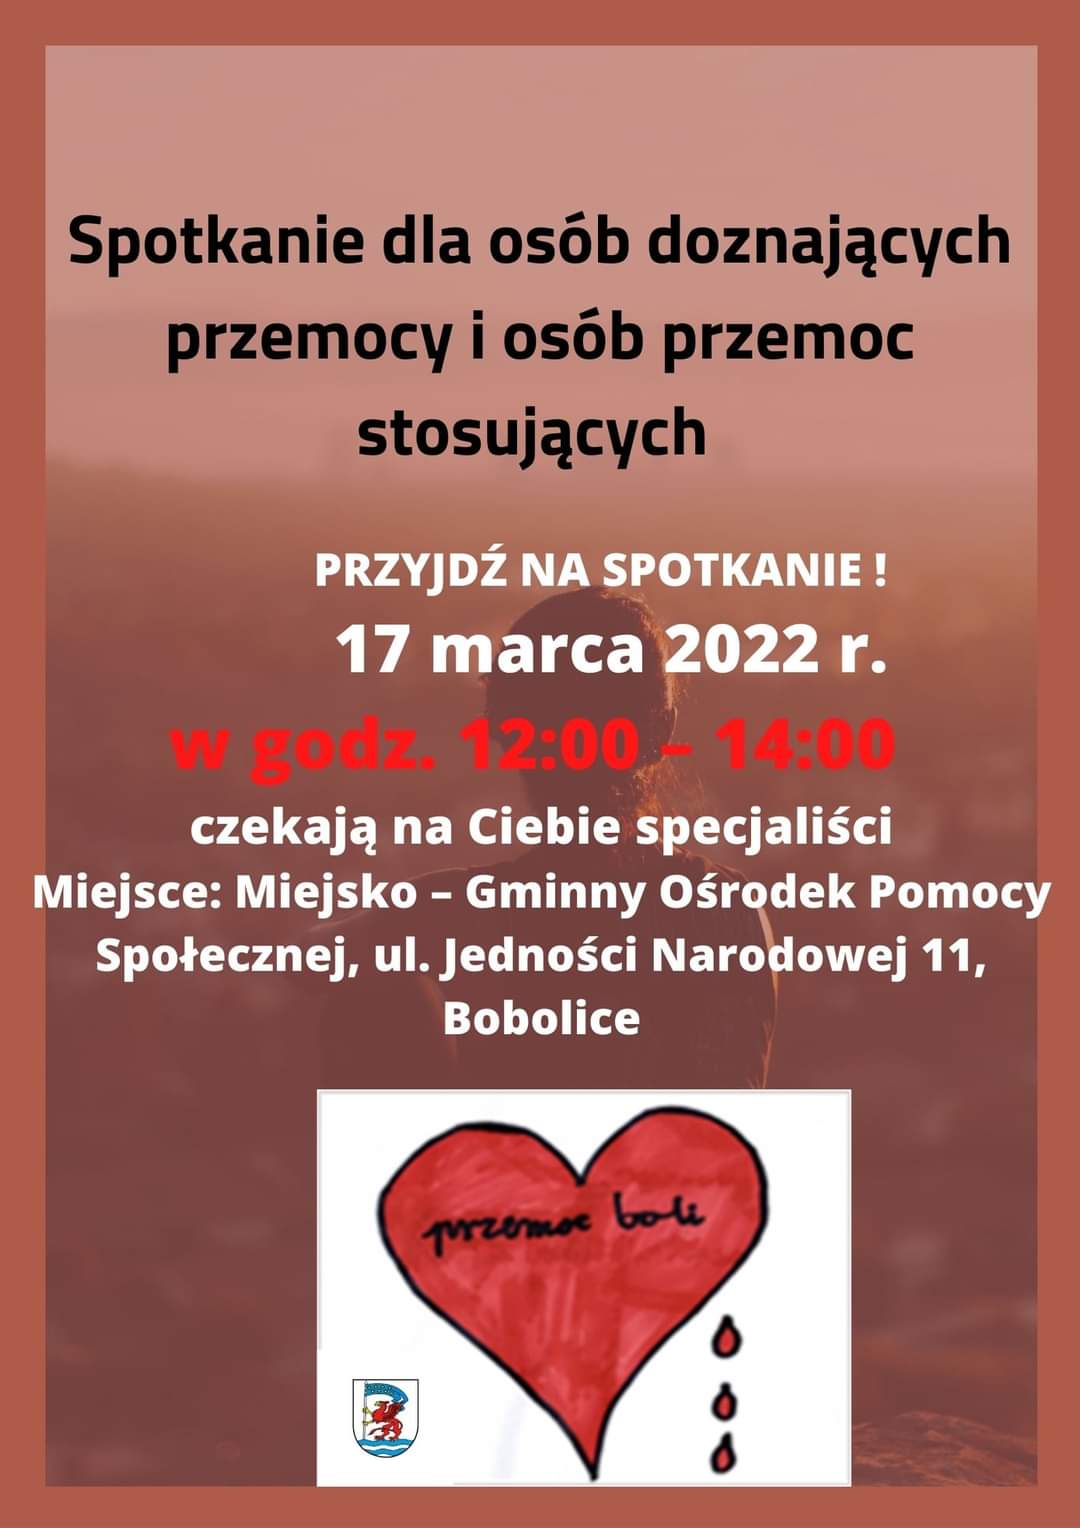 Plakat informujący o spotkaniu dla osób doznających przemocy i osób przemoc stosujących 17 marca 2022 w godz. 12 do 14 w Bobolicach